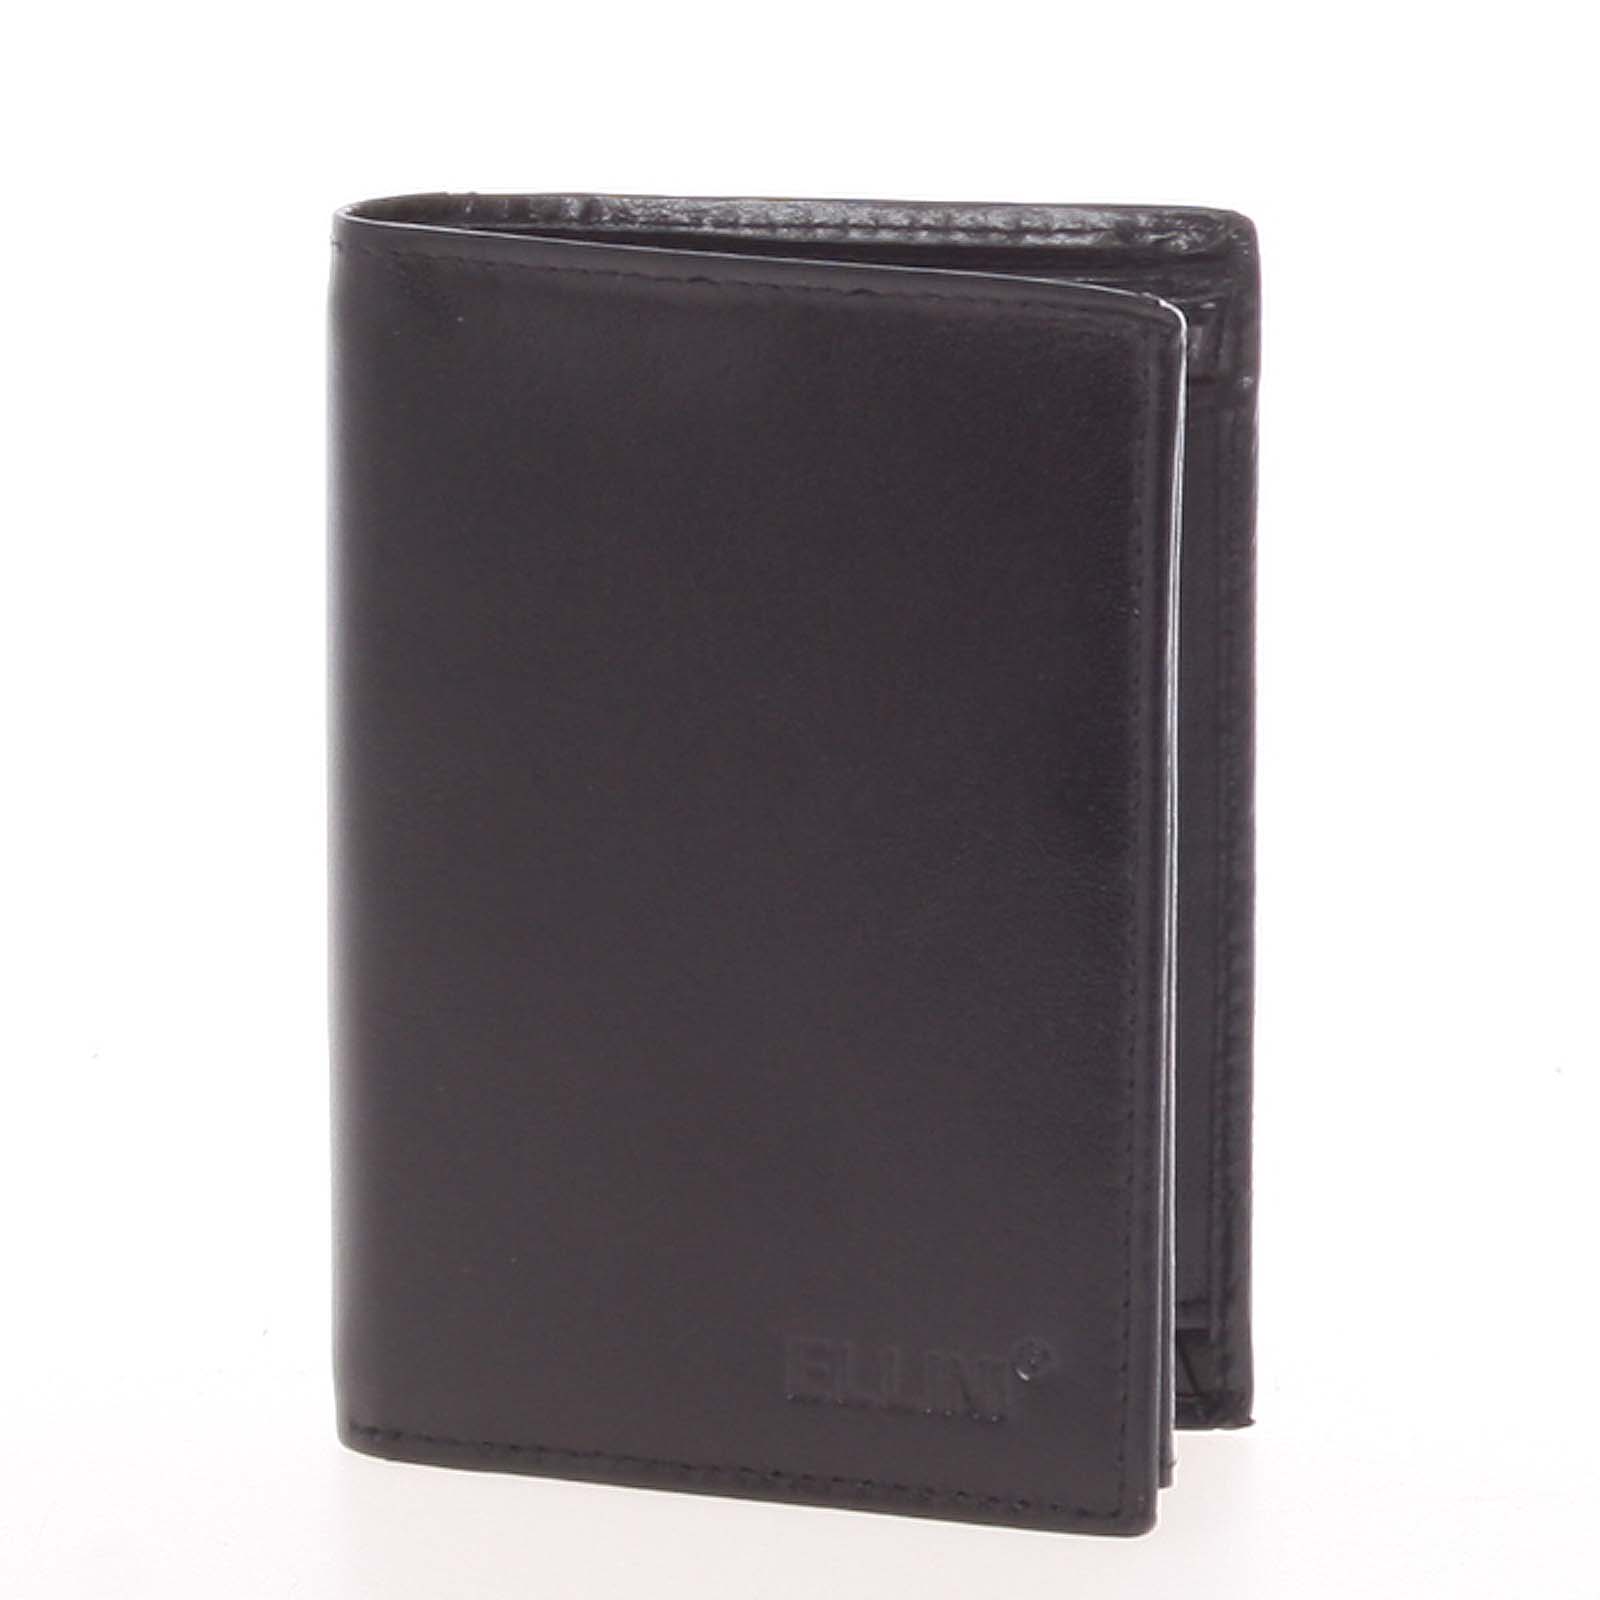 Elegantná pánska kožená voľná peňaženka čierna - Ellini Noran